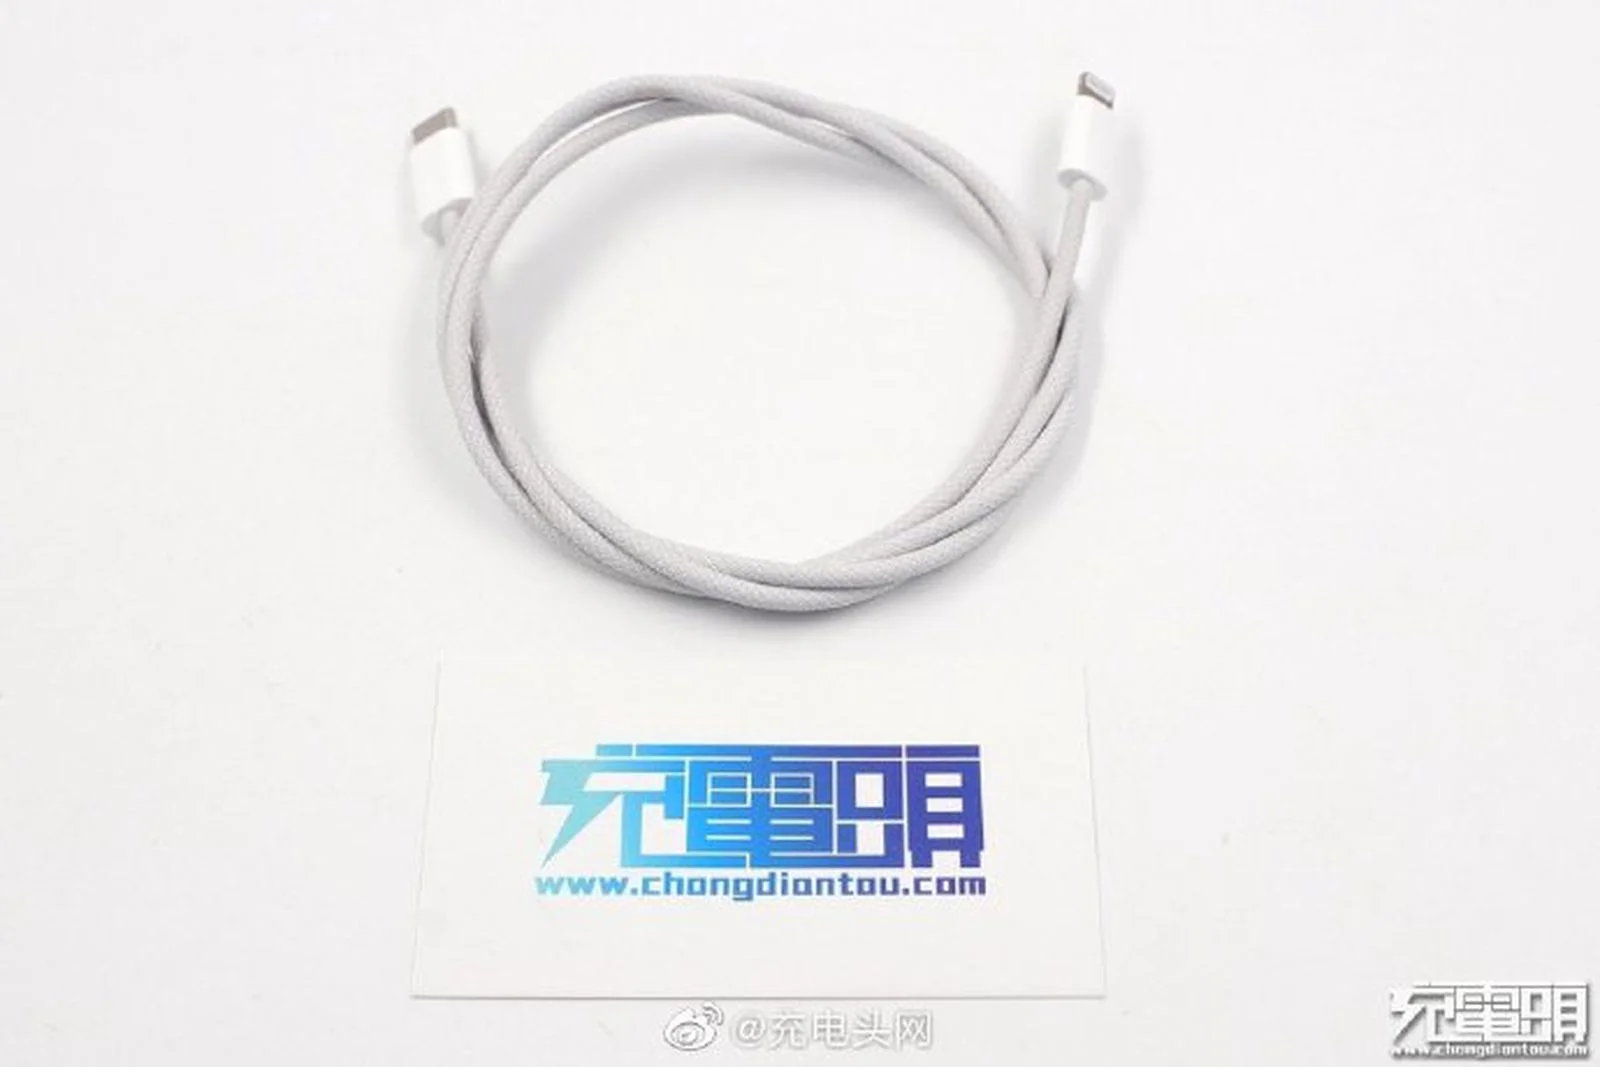 Зарядный кабель iPhone 12 получит тканевую оплетку - фото 1